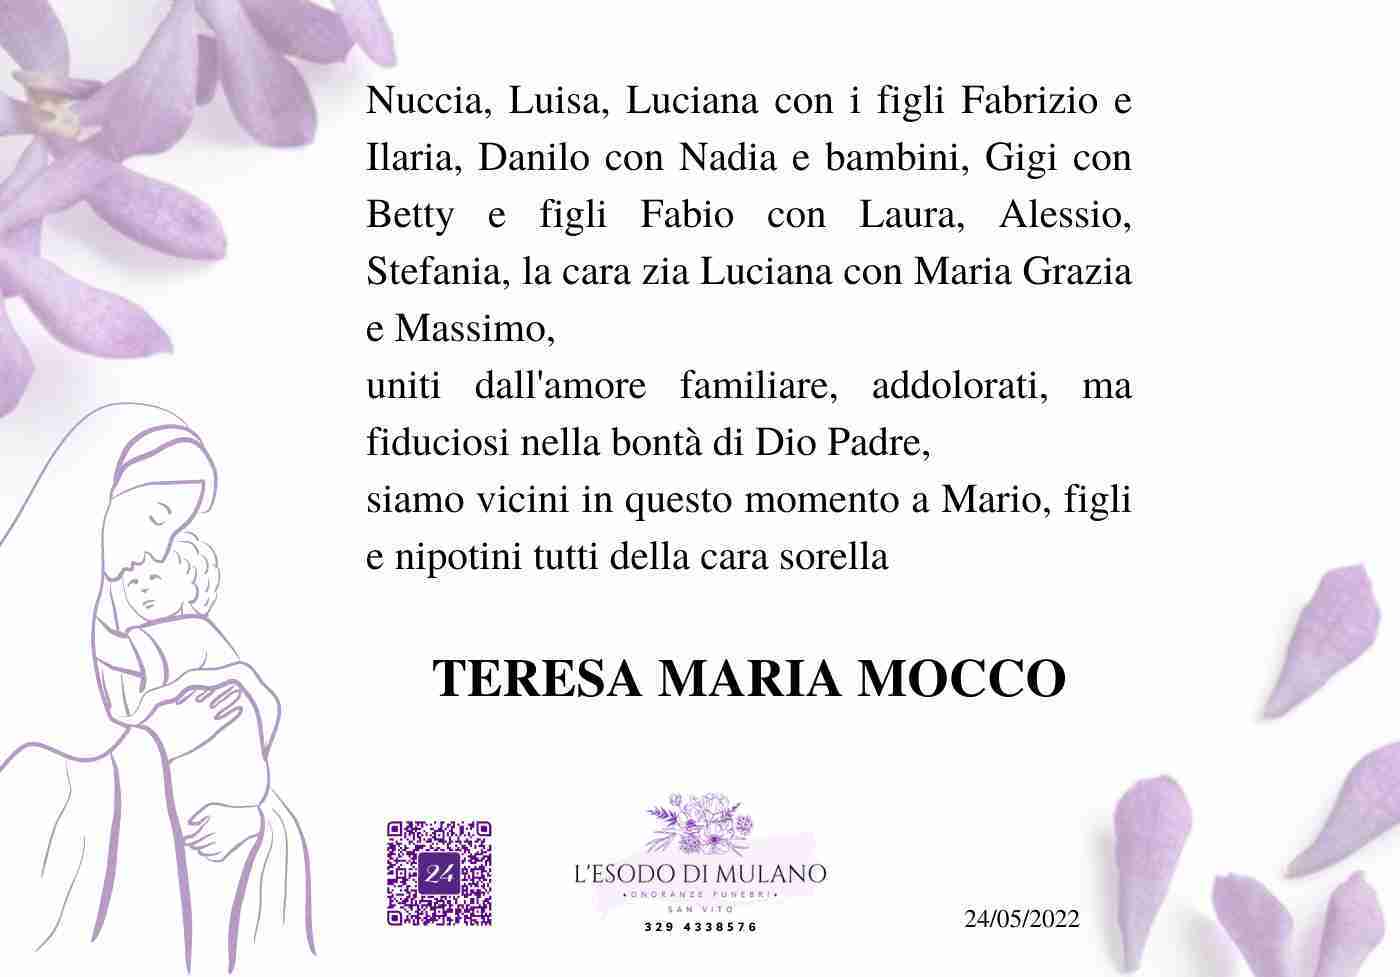 Teresa Maria Mocco